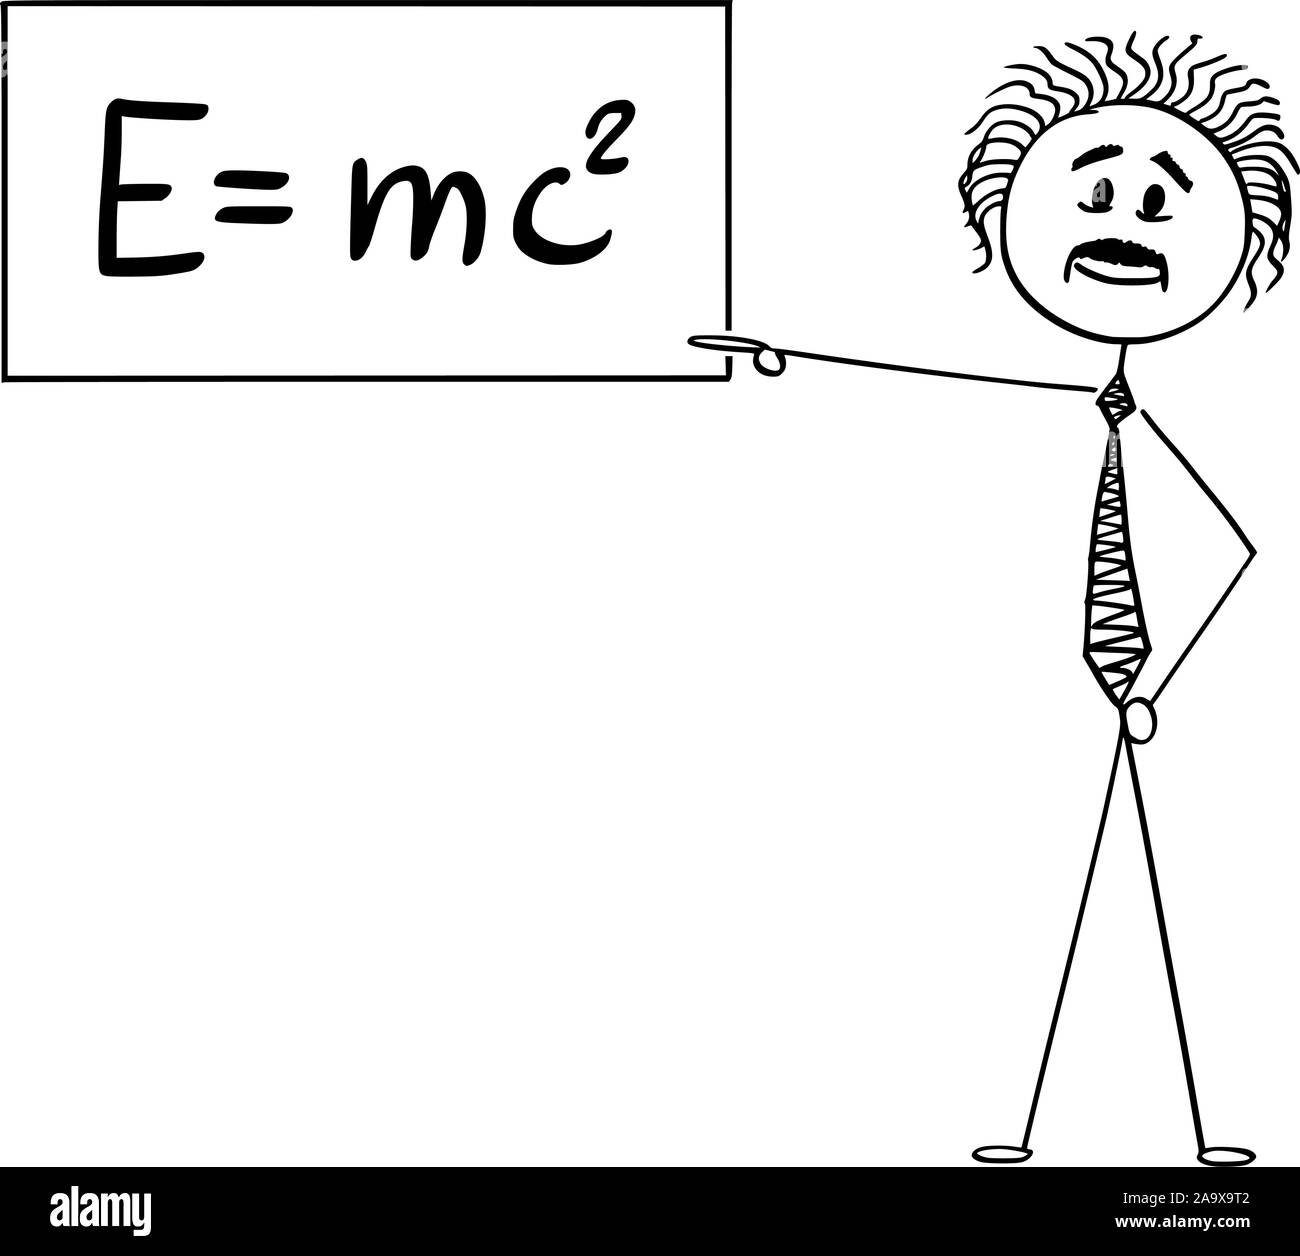 Vektor cartoon Strichmännchen Zeichnen konzeptionelle Darstellung der Wissenschaftler Albert Einstein, der auf Zeichen mit E gleich mc2 Gleichung der speziellen Relativitätstheorie. Stock Vektor